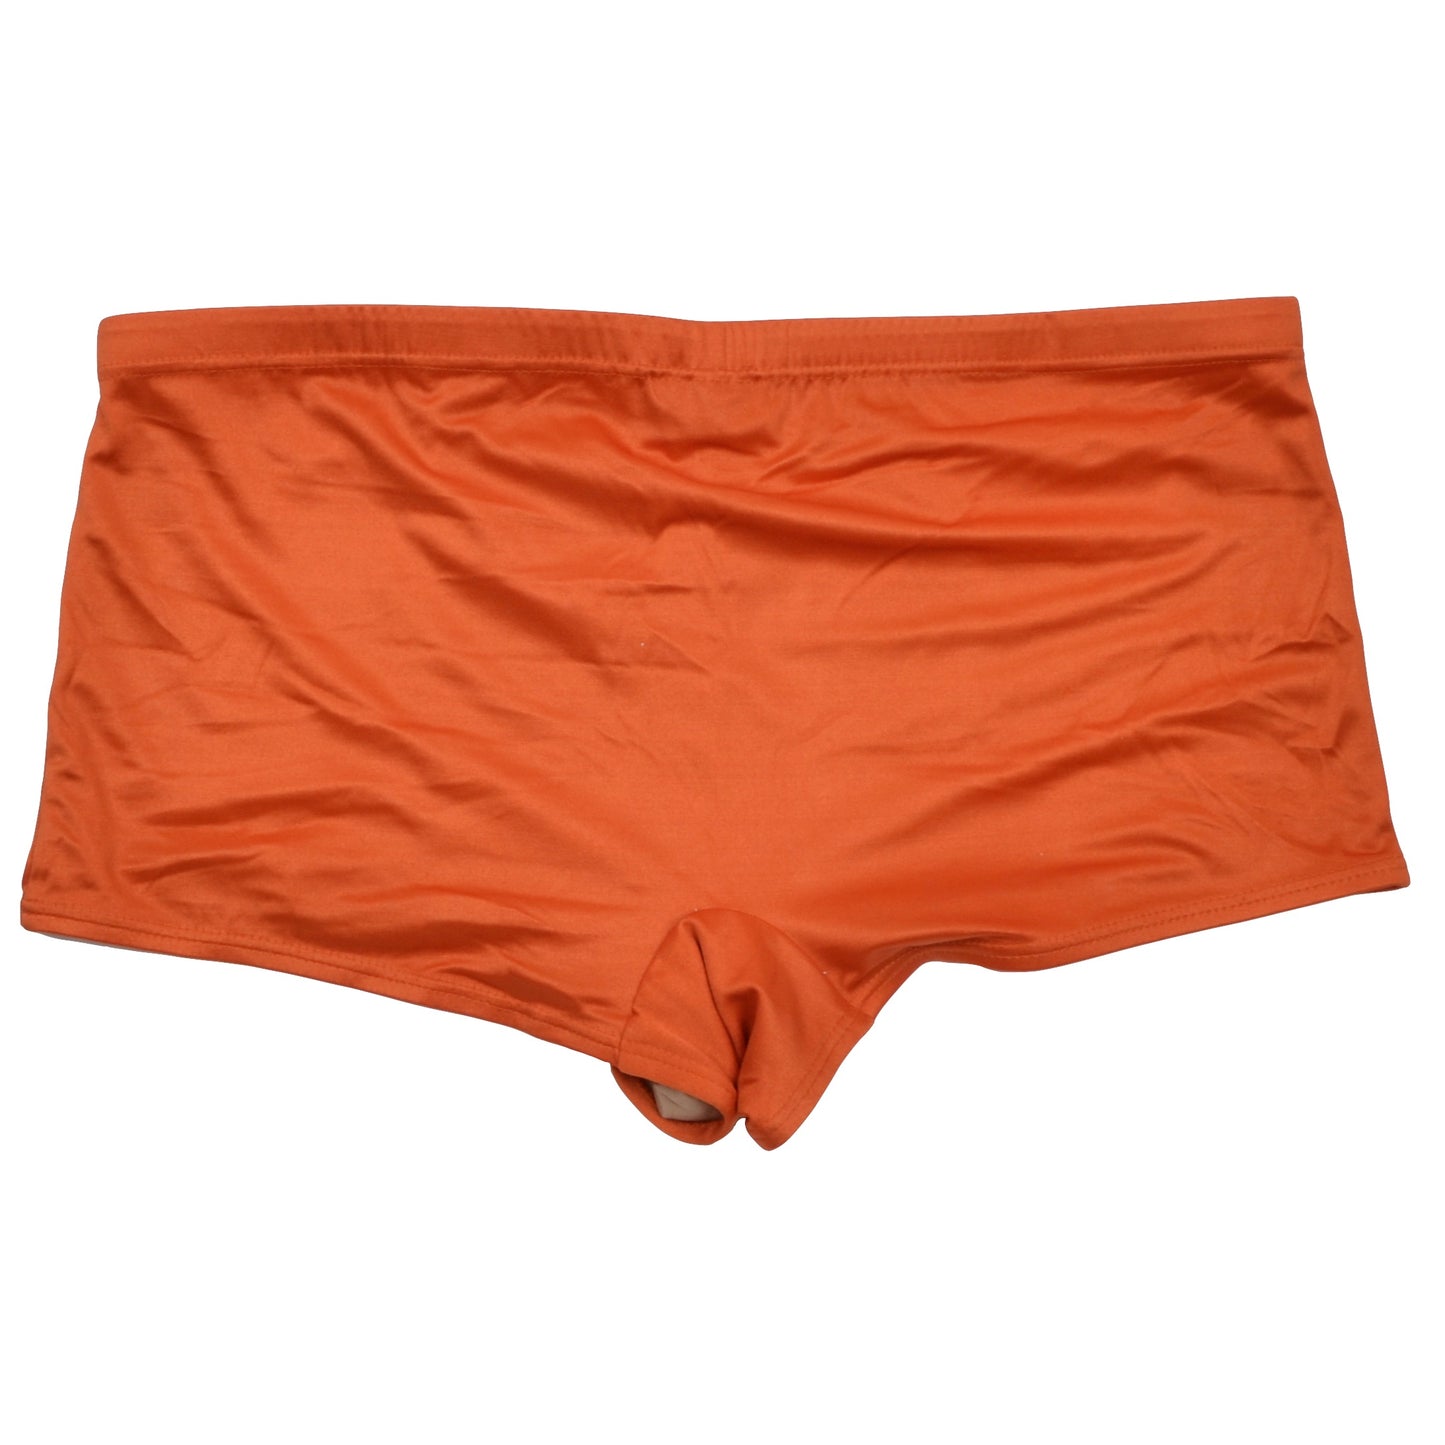 Vintage Bleyle Swim Shorts Size 9 - Orange